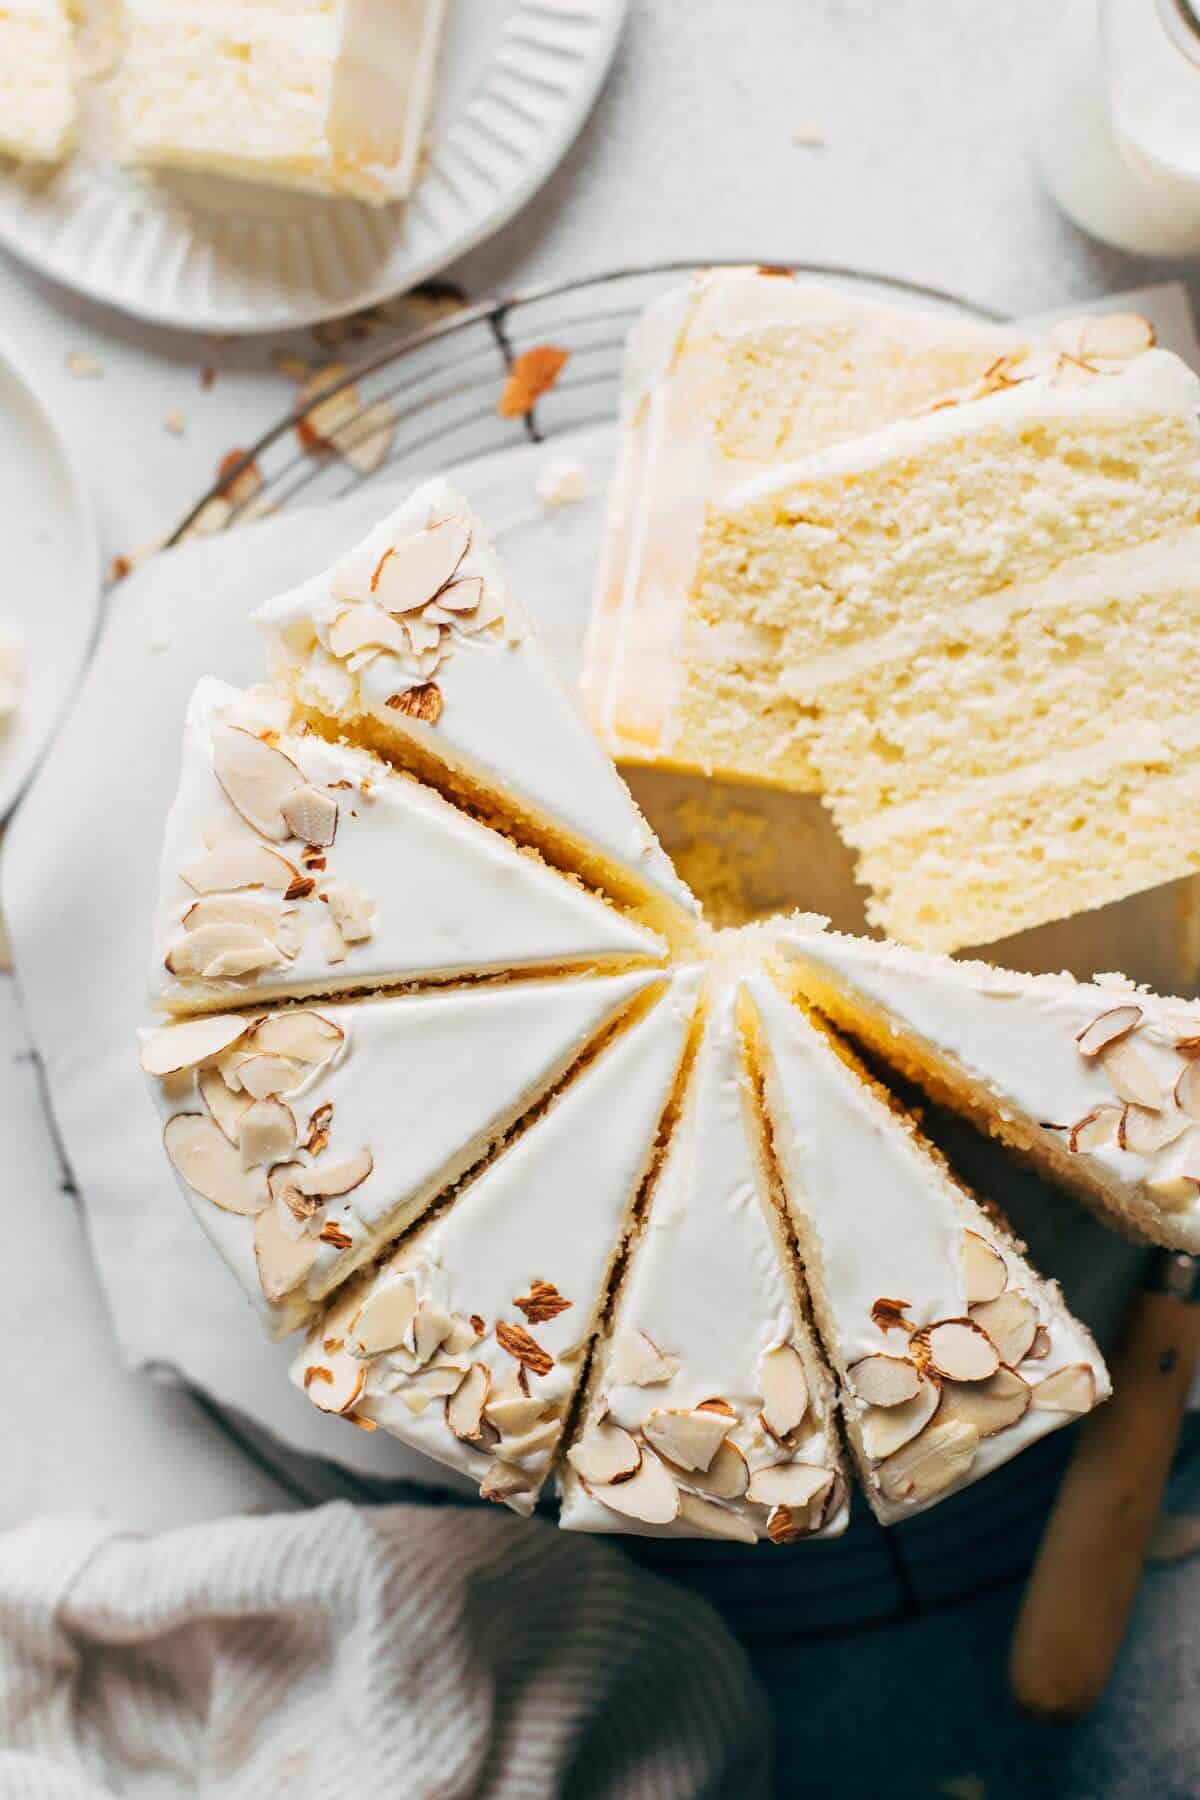 https://butternutbakeryblog.com/wp-content/uploads/2018/04/sweet-almond-cake-slices.jpg